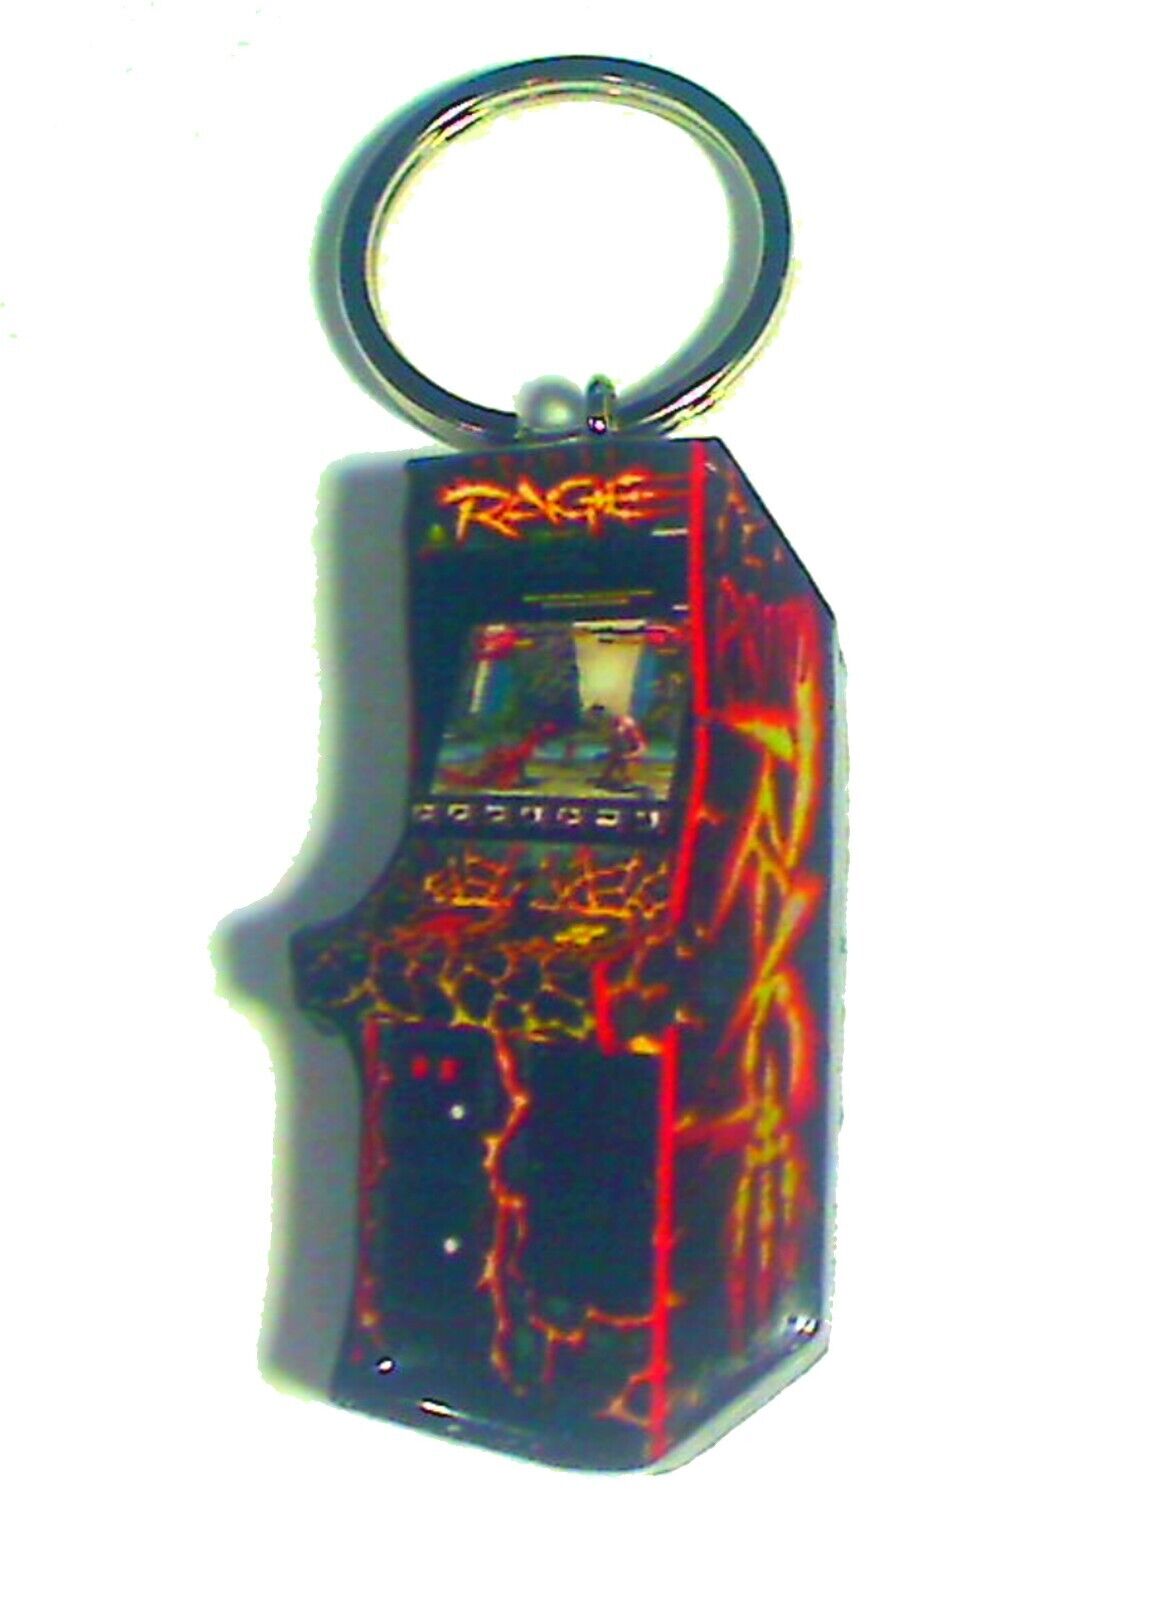 Primal Rage Arcade Cabinet Keychain